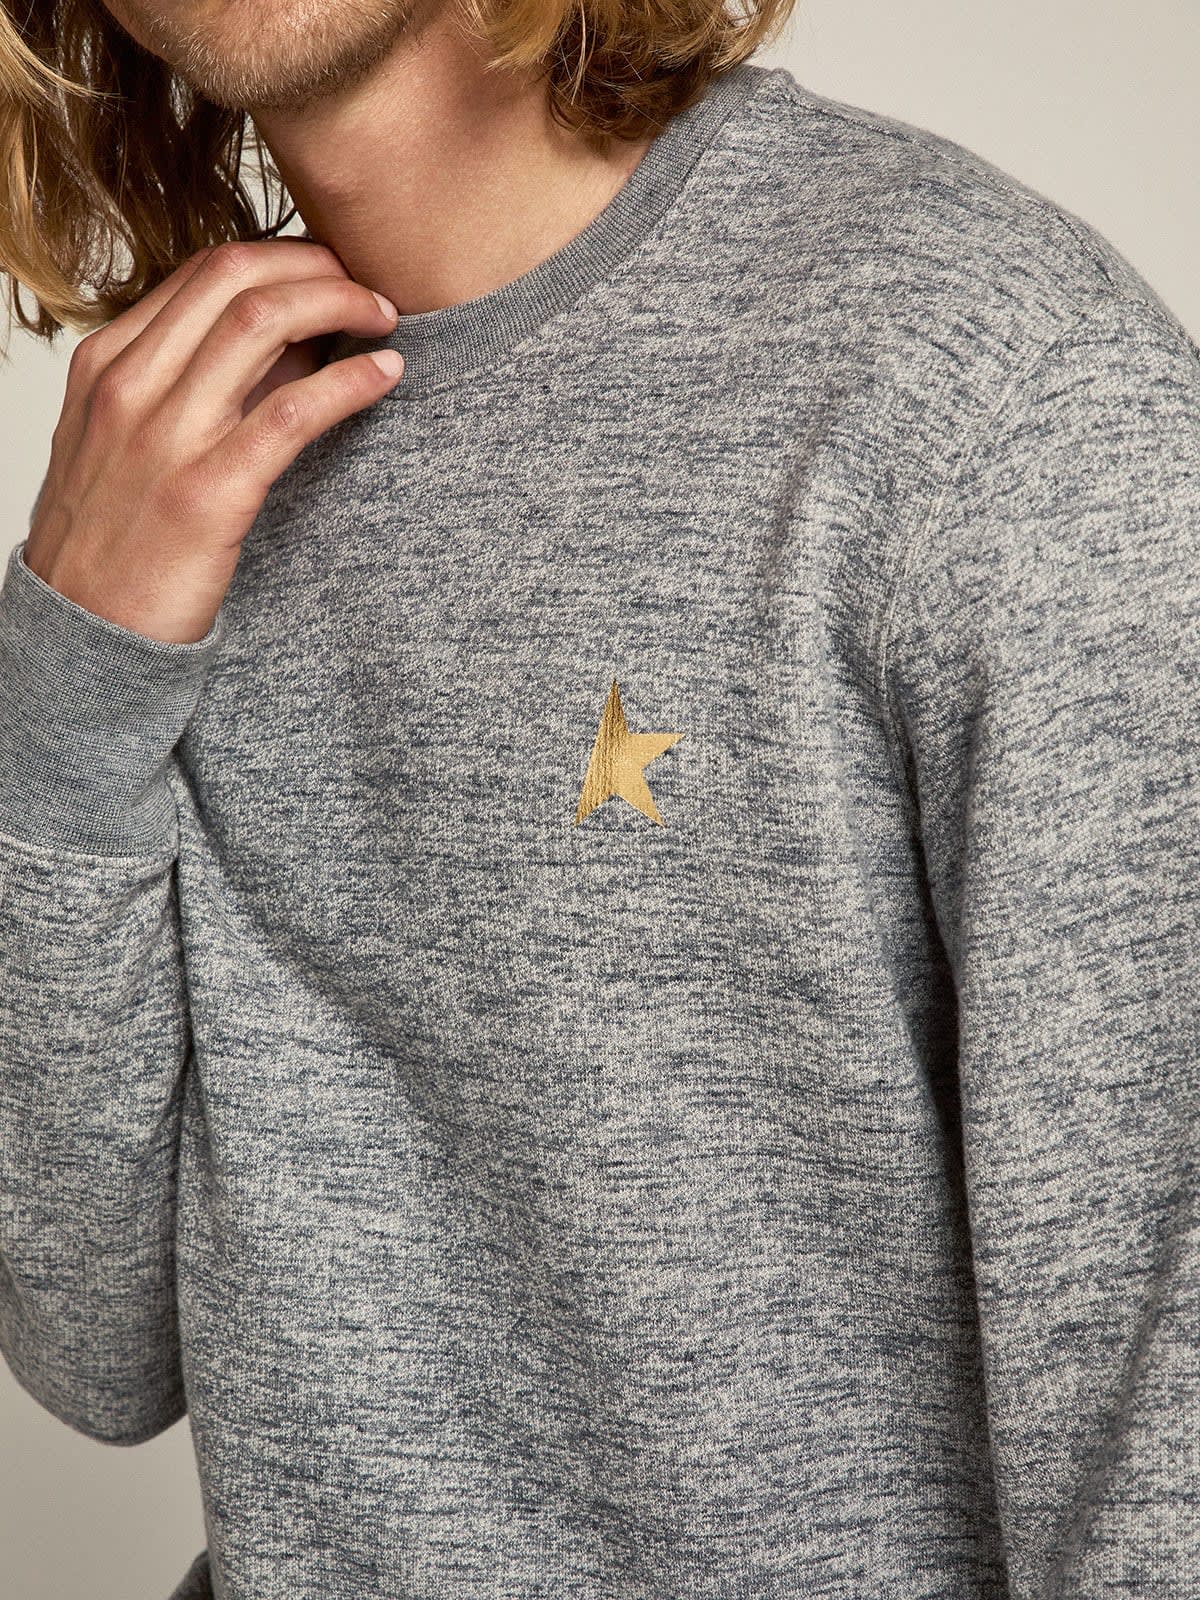 Golden Goose - Sweat-shirt Archibald collection Star en coton gris chiné avec étoile dorée contrastée sur le devant in 